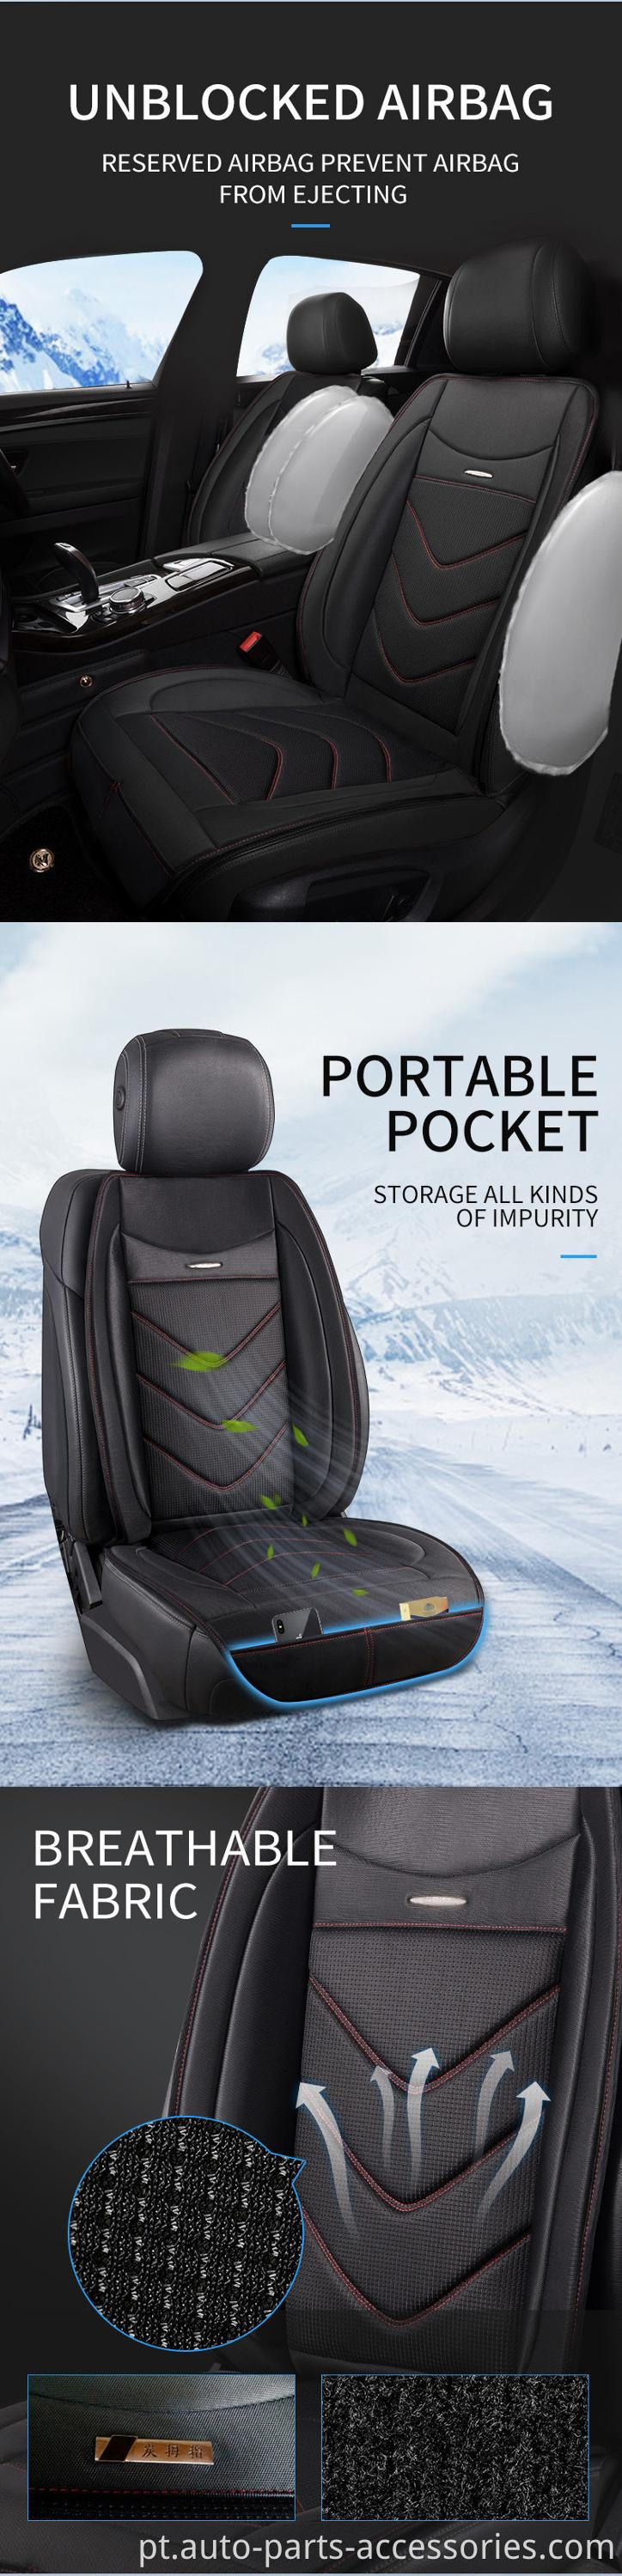 almofada de assento de malha de resfriamento de ar, tampa do assento do carro, almofada do assento de resfriamento do carro